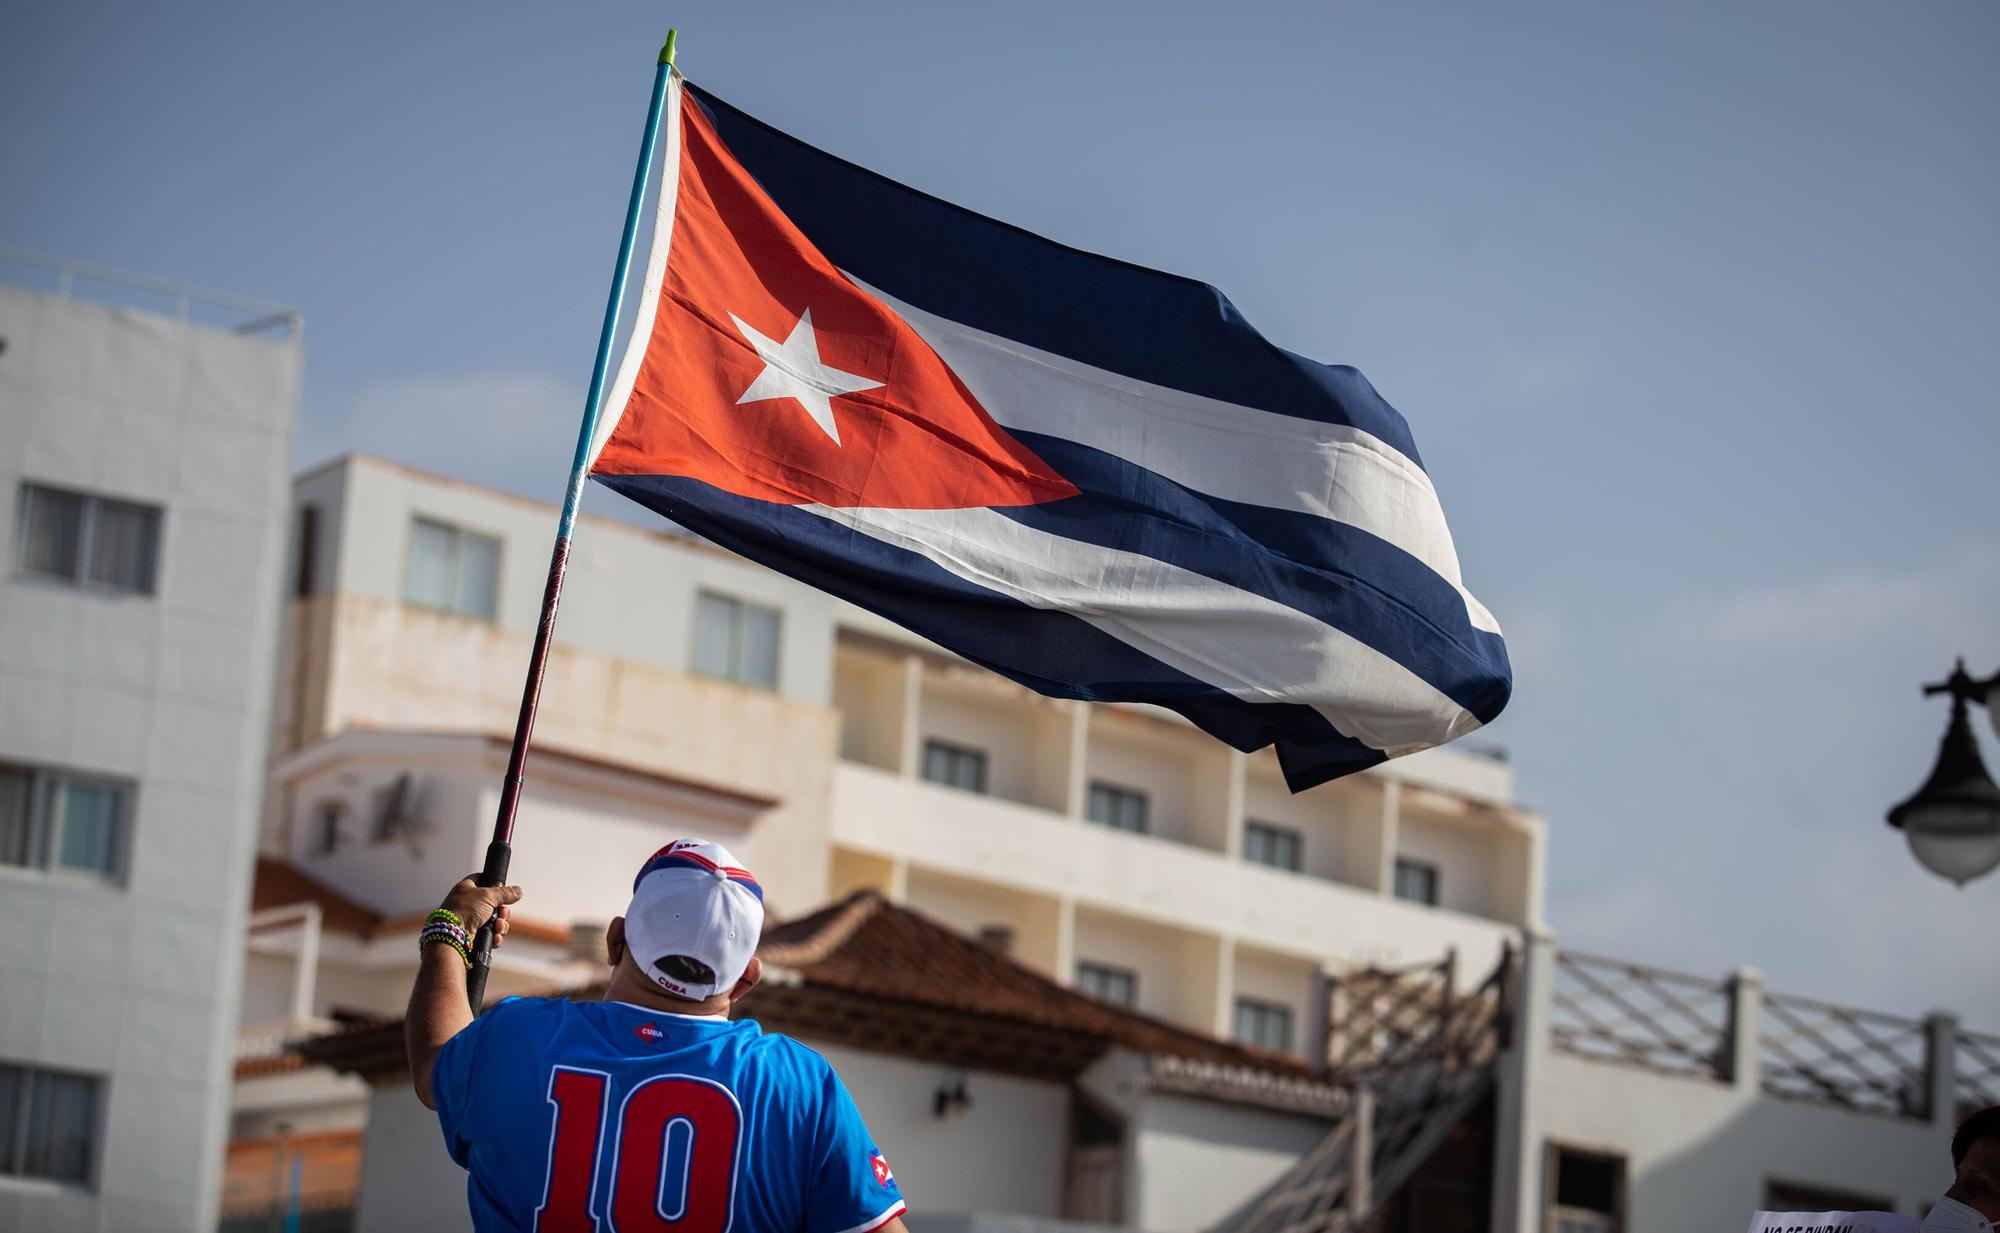 Manifestación por una Cuba libre